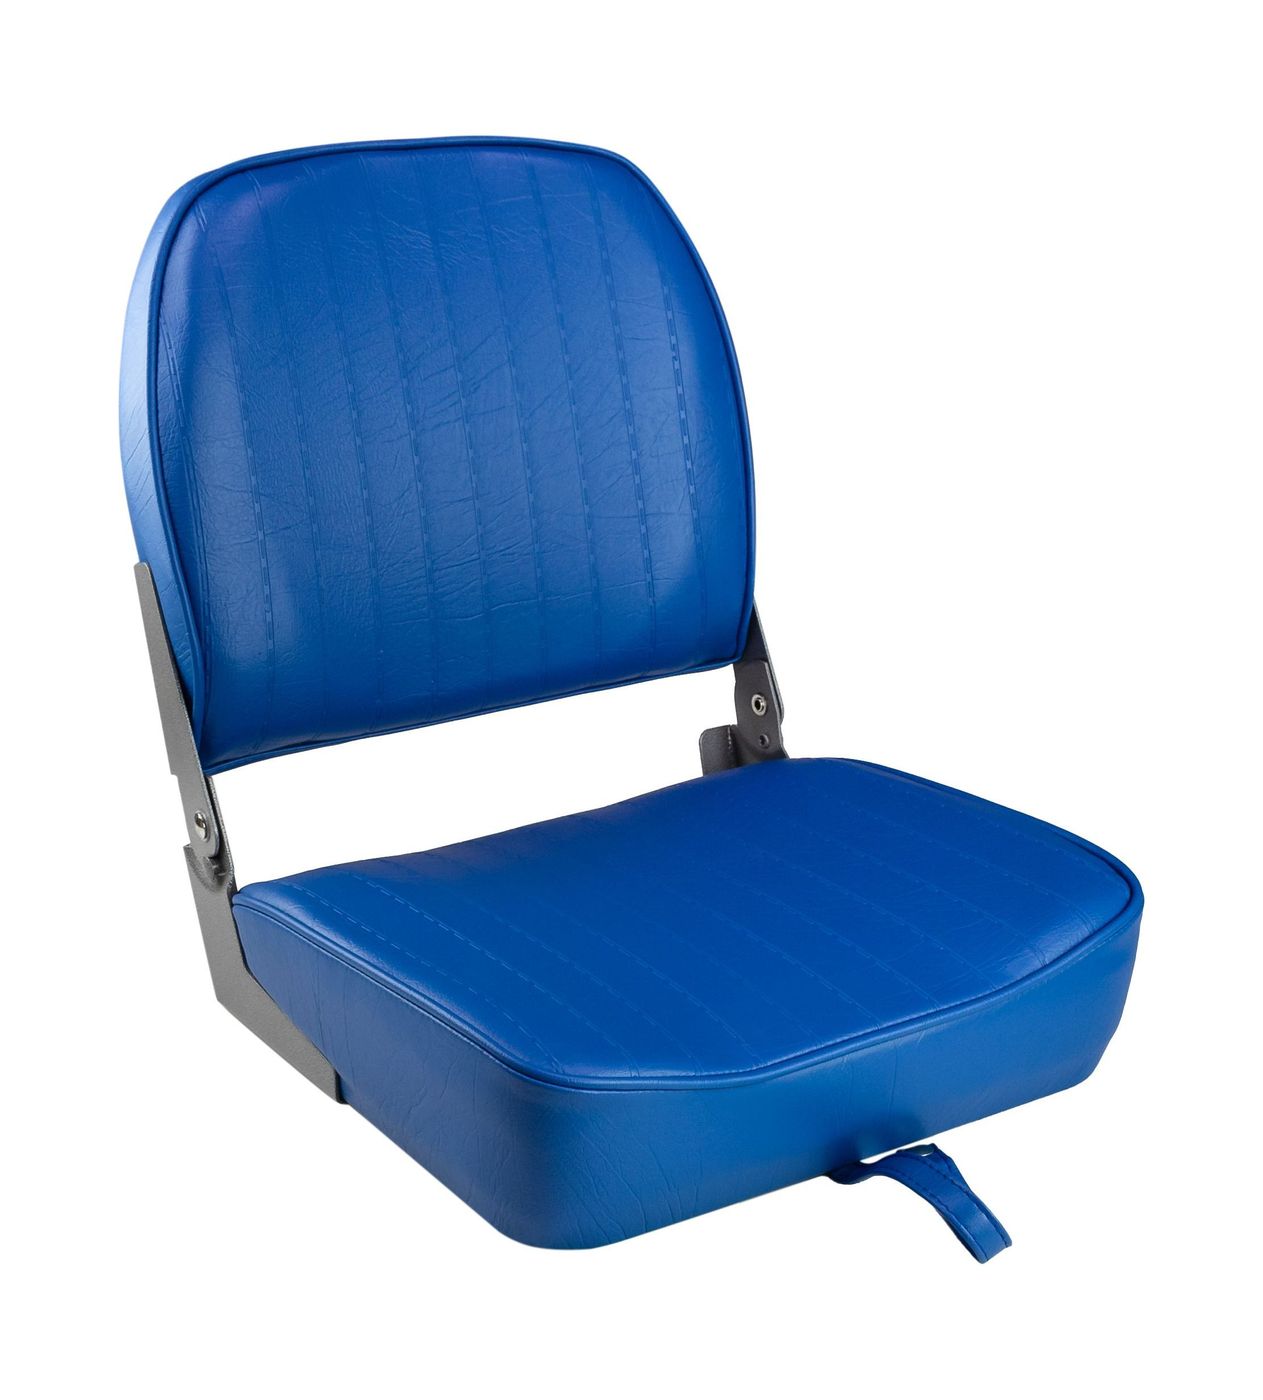 Кресло складное мягкое ECONOMY с низкой спинкой, цвет синий 1040621 кресло складное мягкое economy с высокой спинкой серый синий на стойке с вращающимся основанием 1040661 komp 2